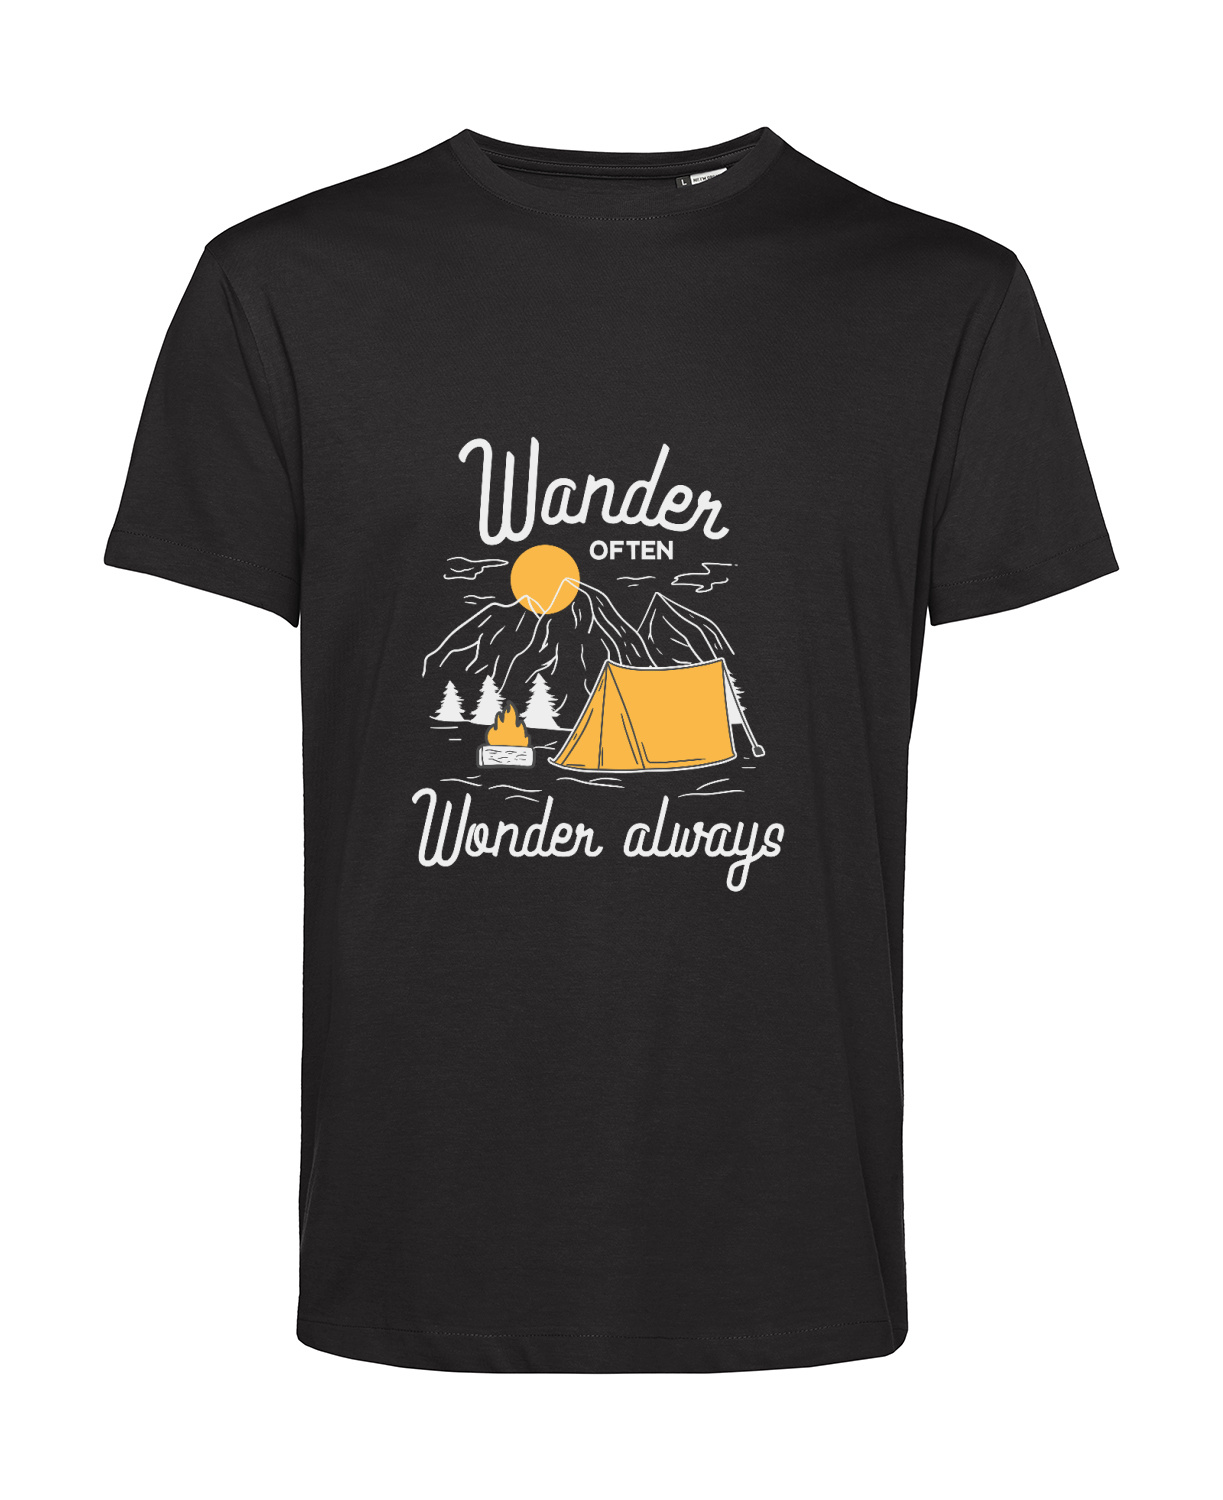 Nachhaltiges T-Shirt Herren Outdoor - Wander often - Wonder always